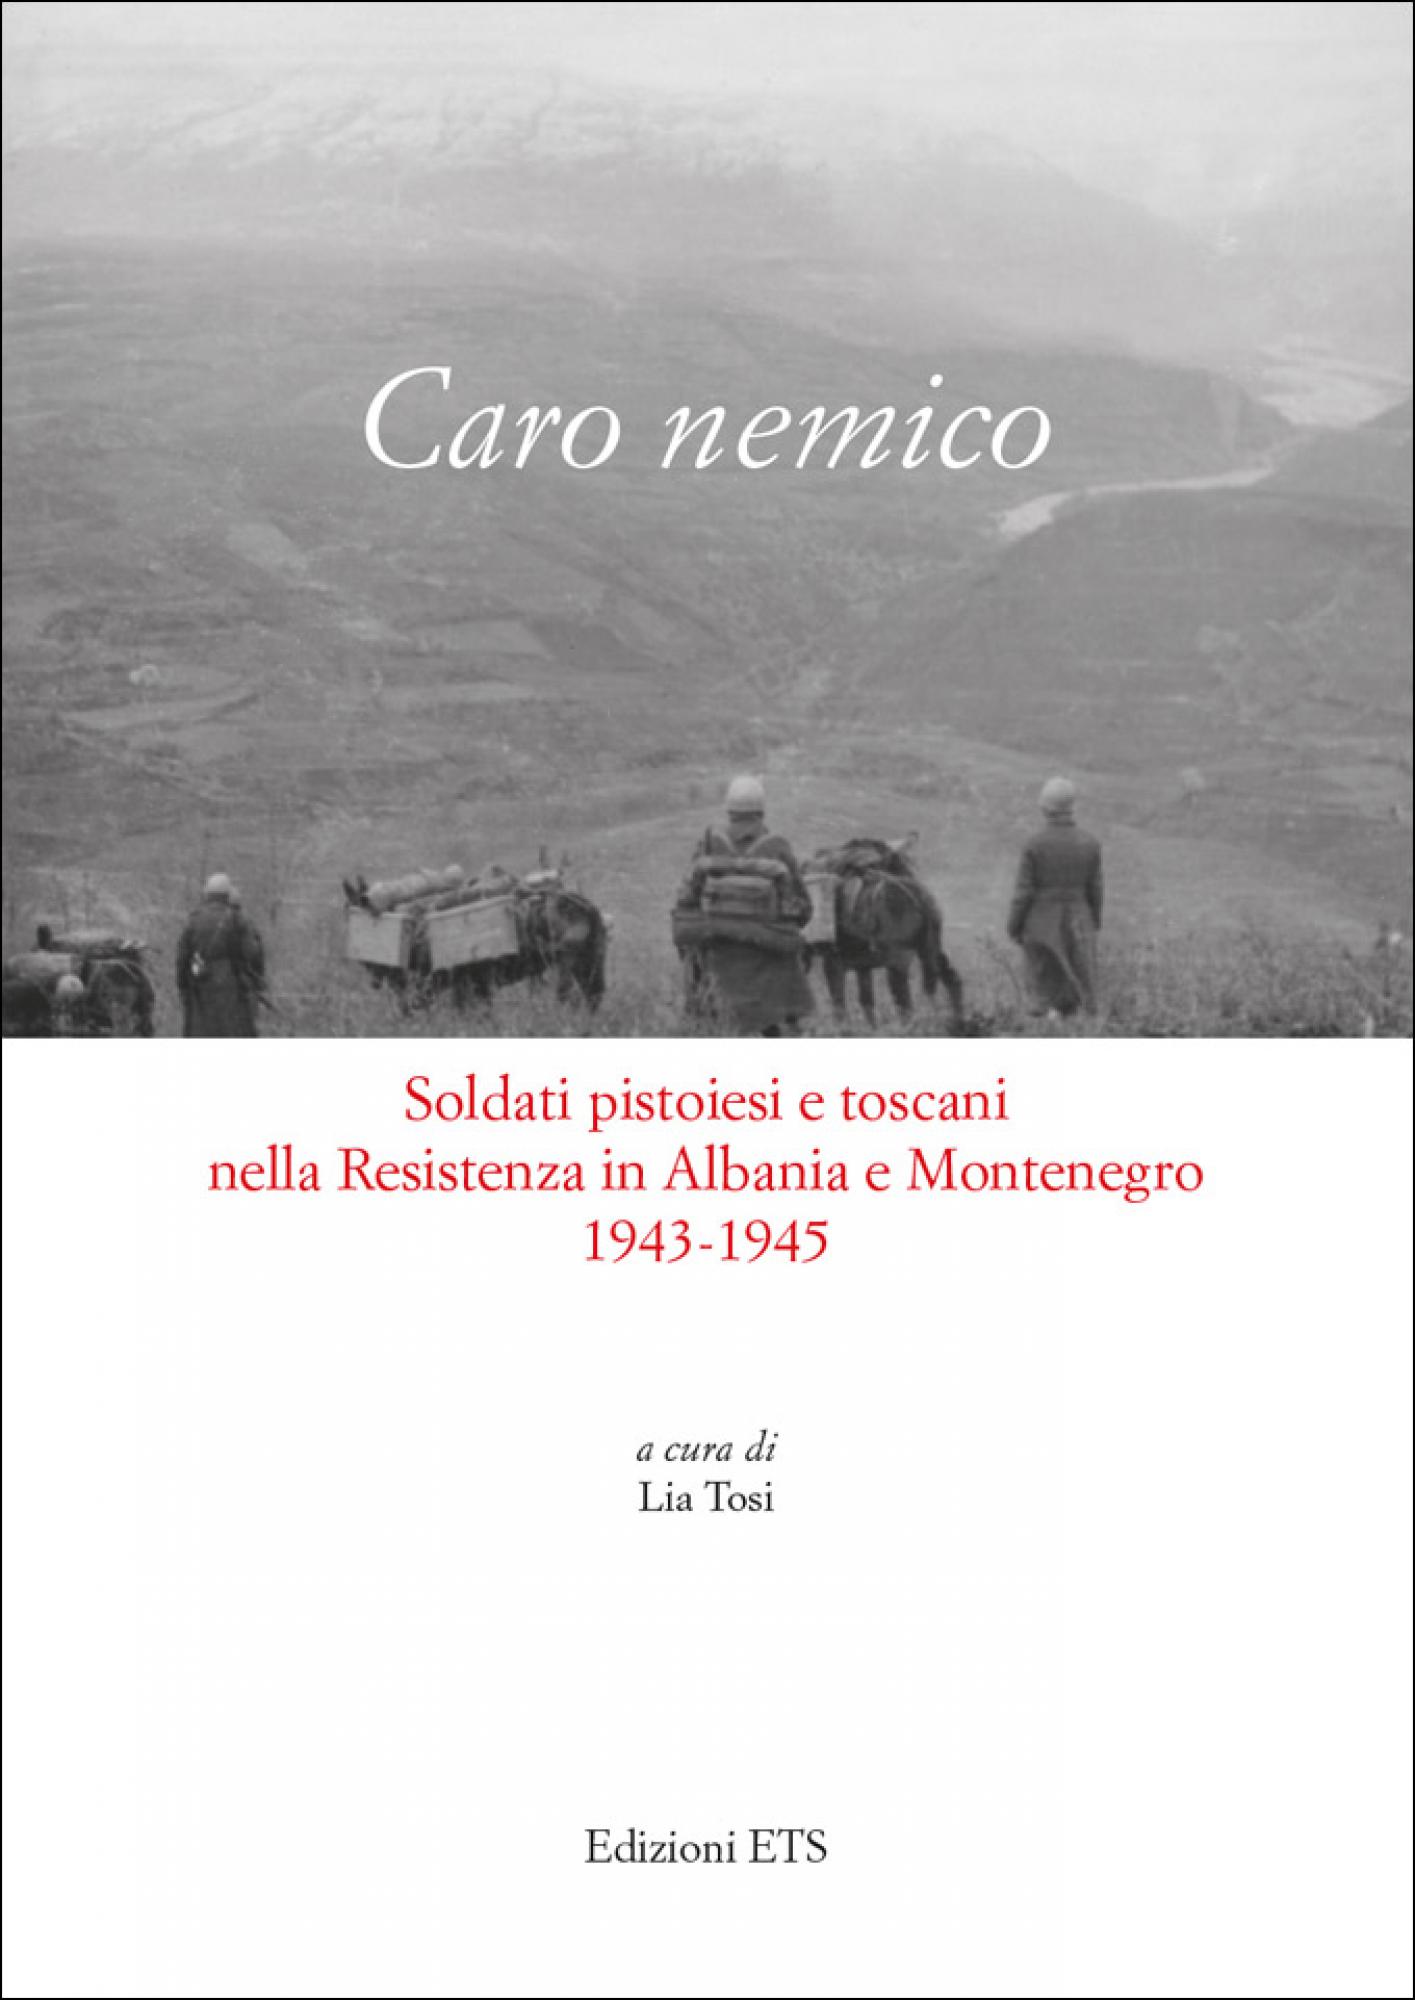 Caro nemico.Soldati pistoiesi e toscani nella Resistenza in Albania e Montenegro 1943-1945